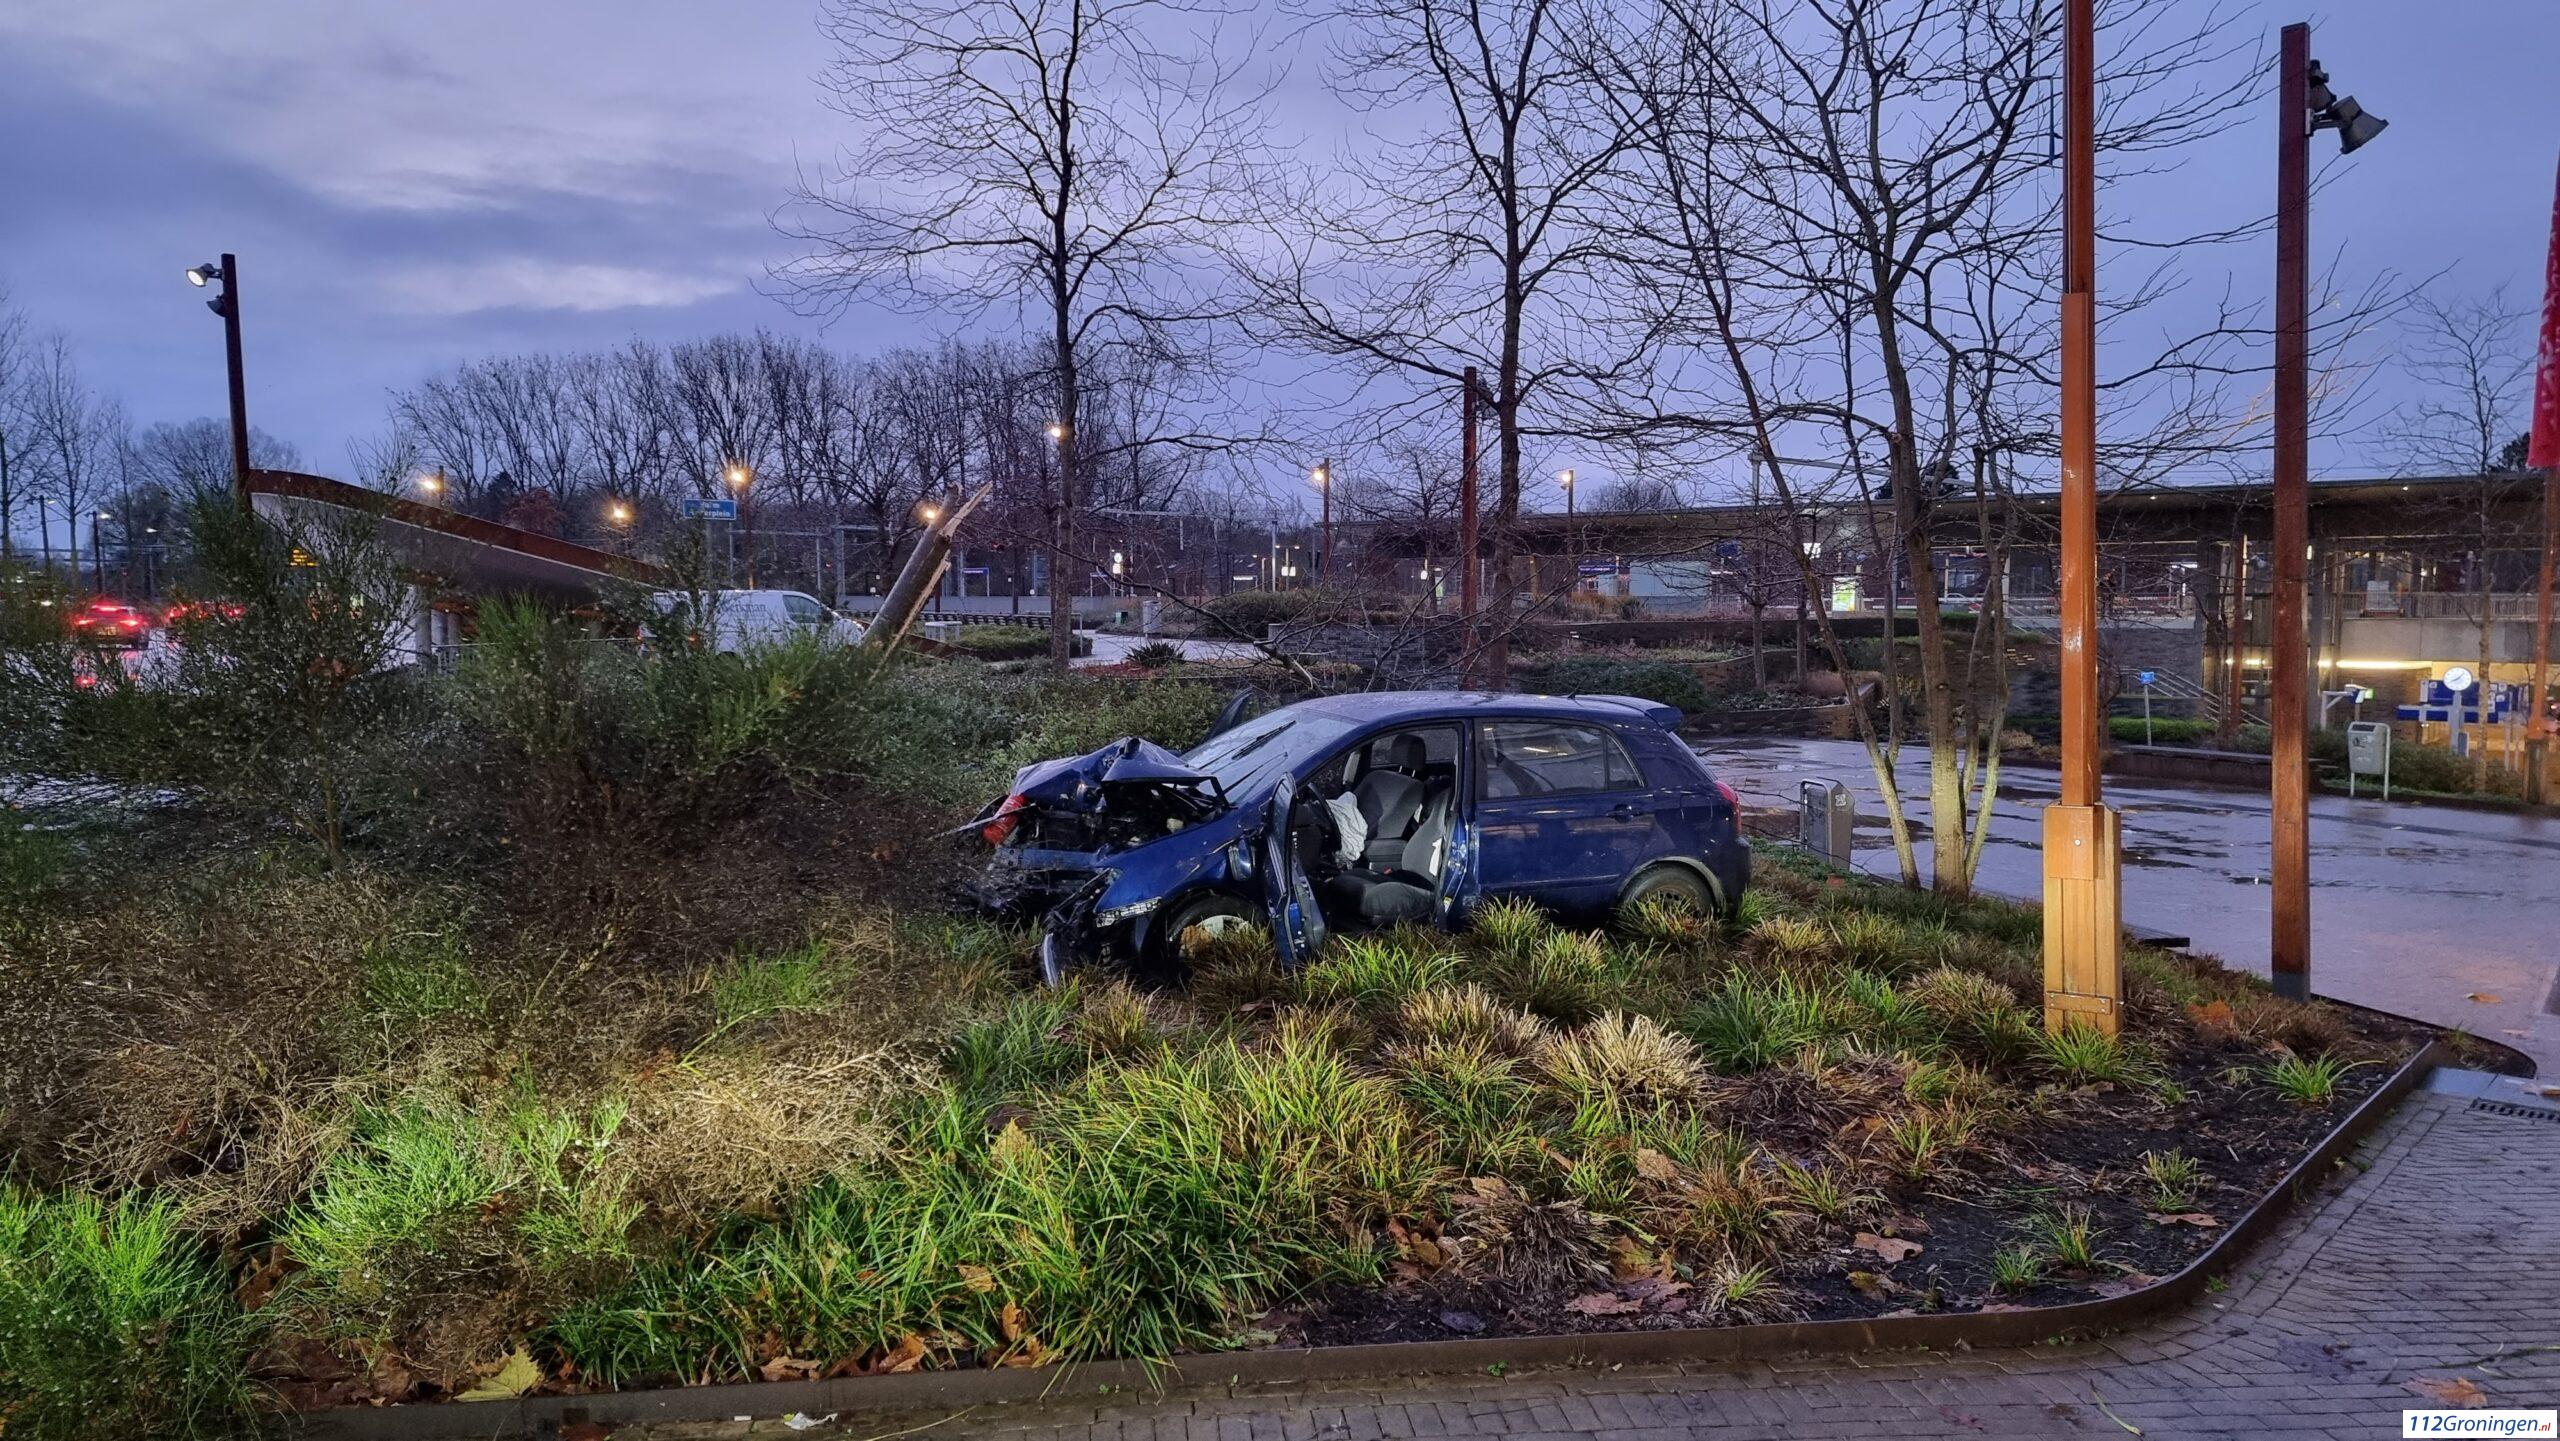 Auto total loss na eenzijdig ongeval bij station Europapark, 1 gewonde.